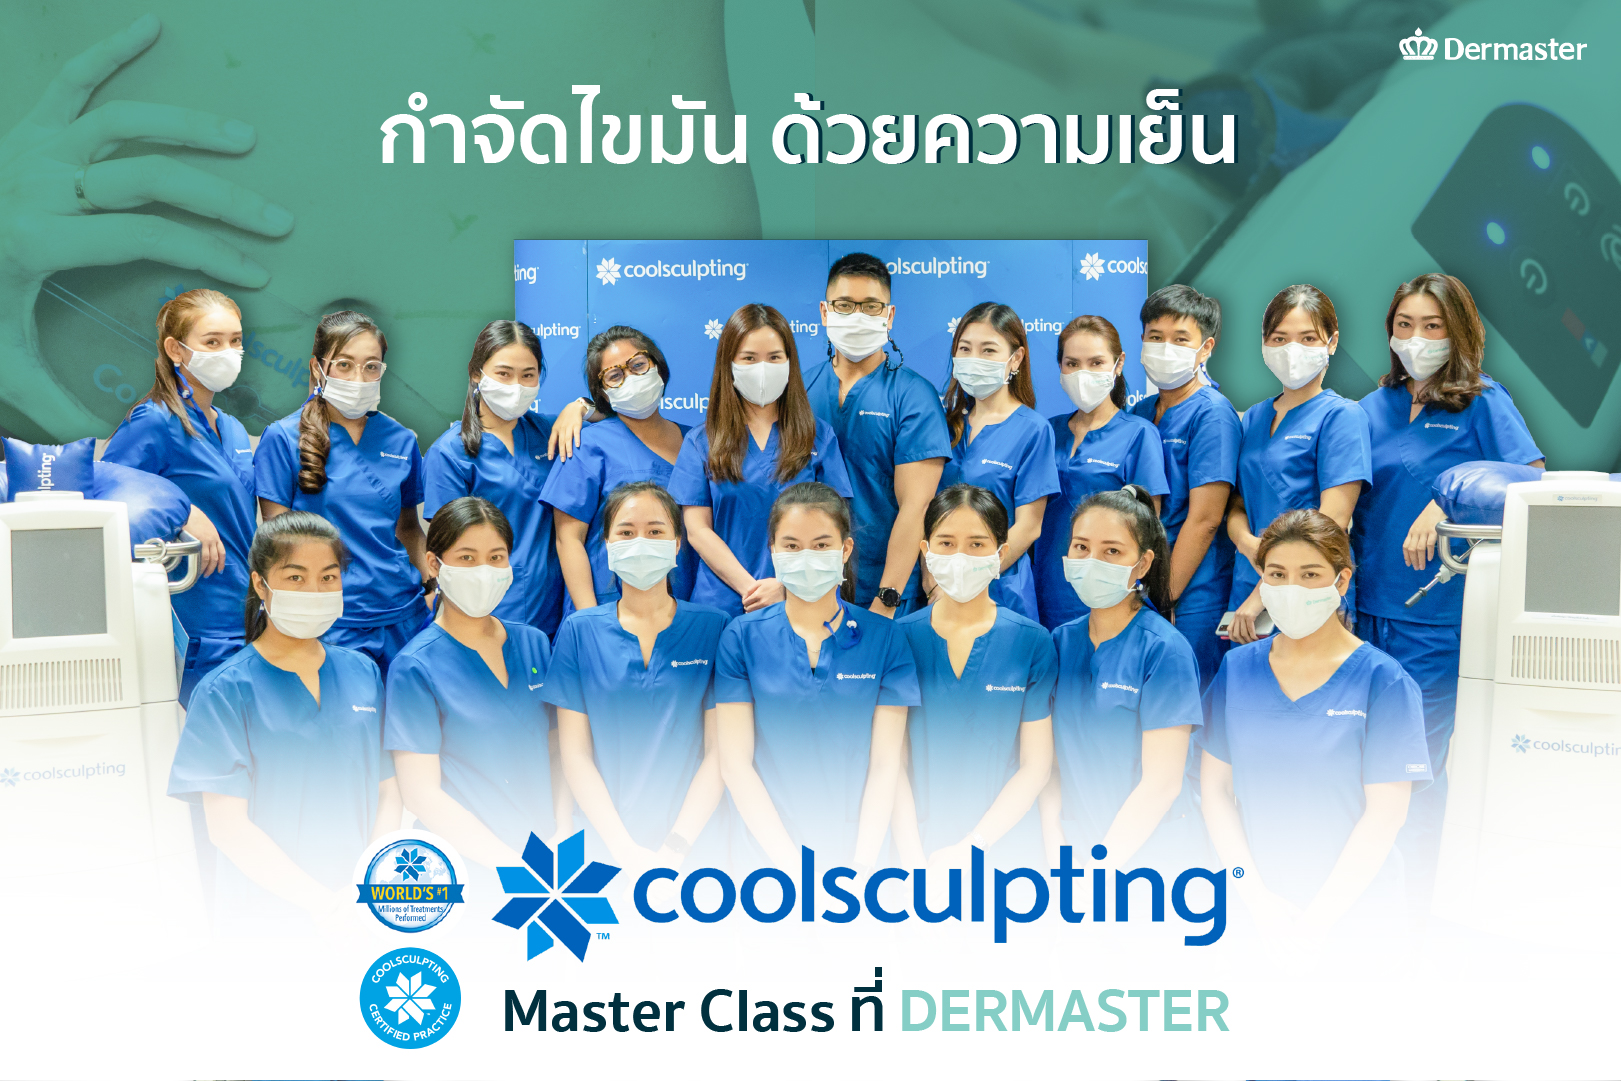 เดอร์มาสเตอร์ ร่วมกับ บริษัท แอลเลอร์แกน (ประเทศไทย) จำกัด จัดอบรมคอร์ส Master Class CoolSculpting Training